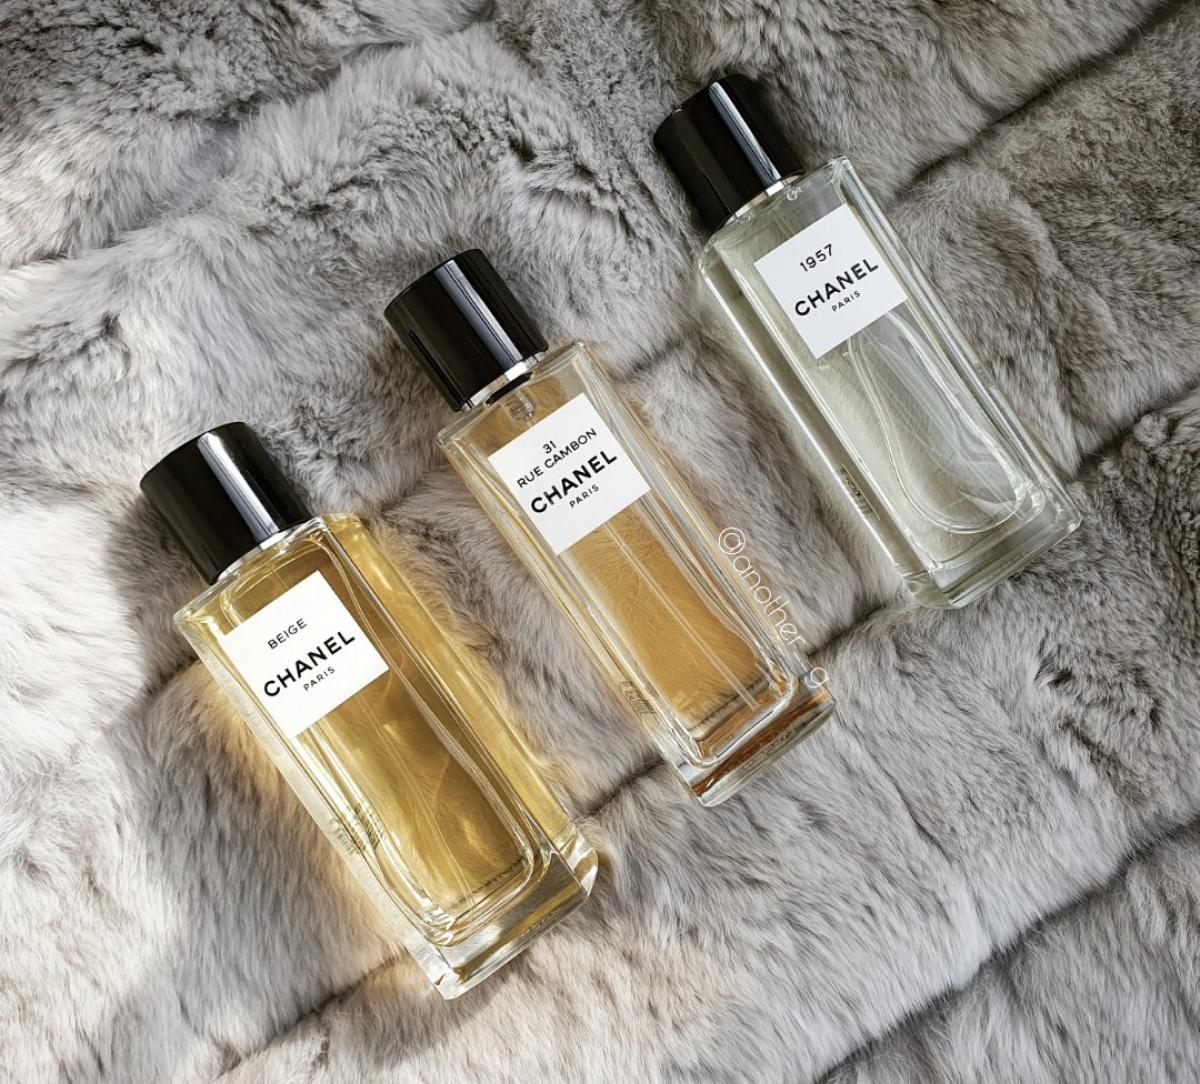 Chanel 1957 Chanel parfum - een nieuwe geur voor dames en heren 2019